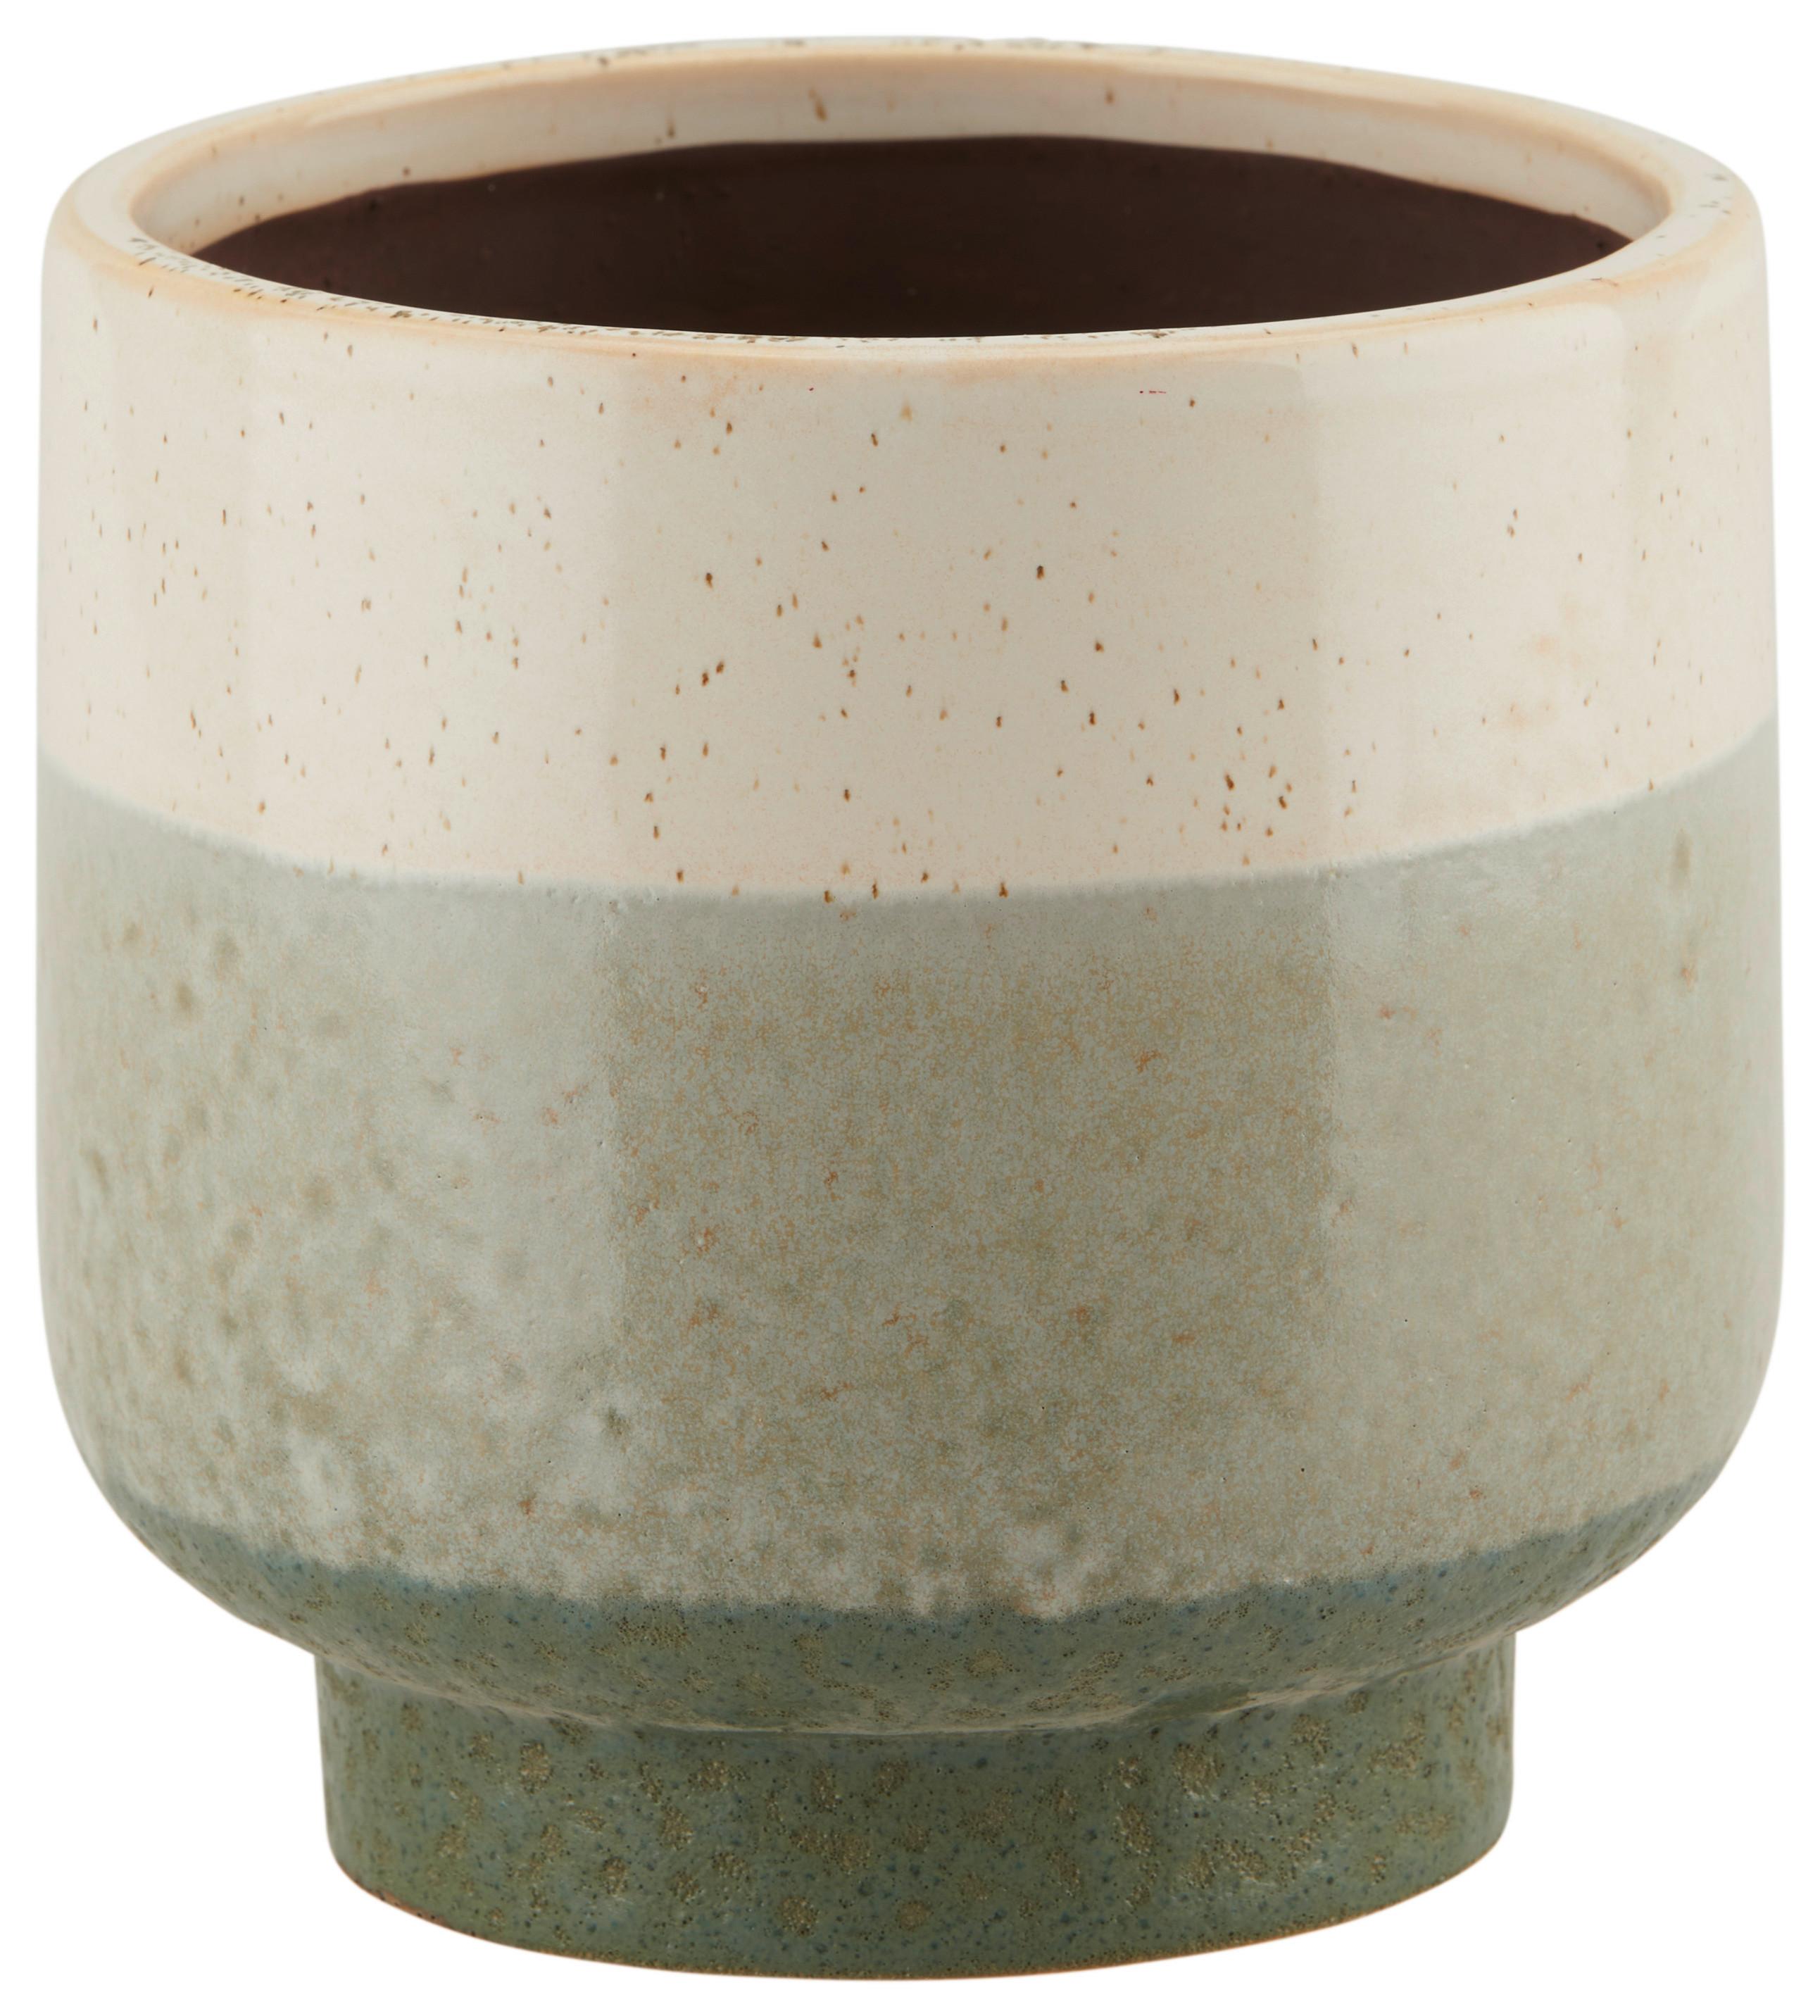 Cvetlični Lonček Inma I -Paz- - Basics, keramika (14,5/15cm) - Premium Living